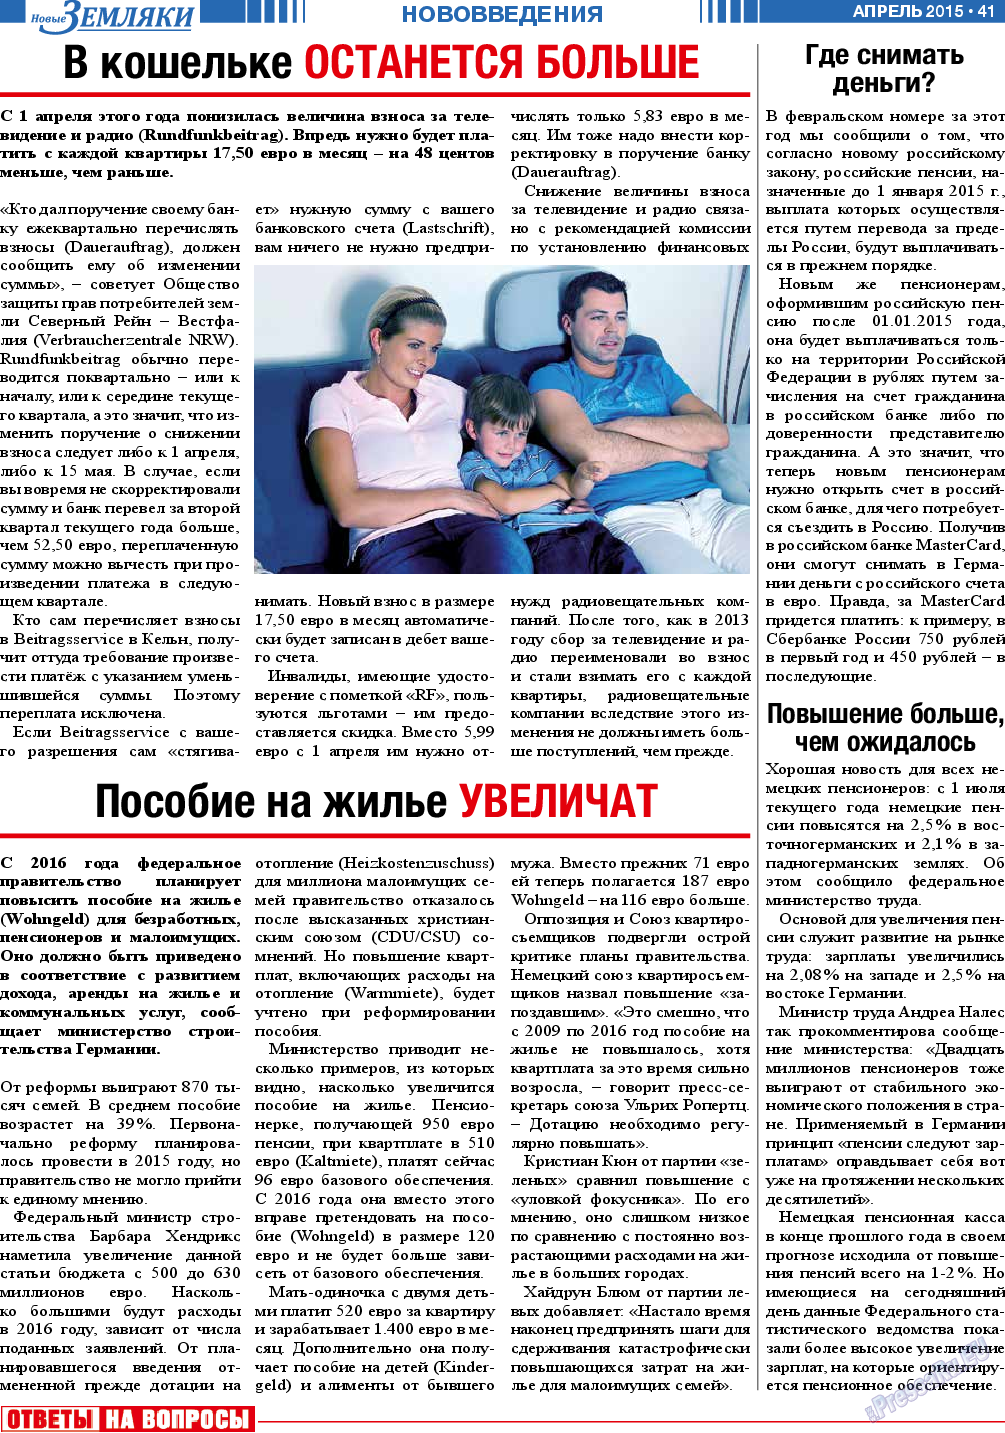 Новые Земляки, газета. 2015 №4 стр.41